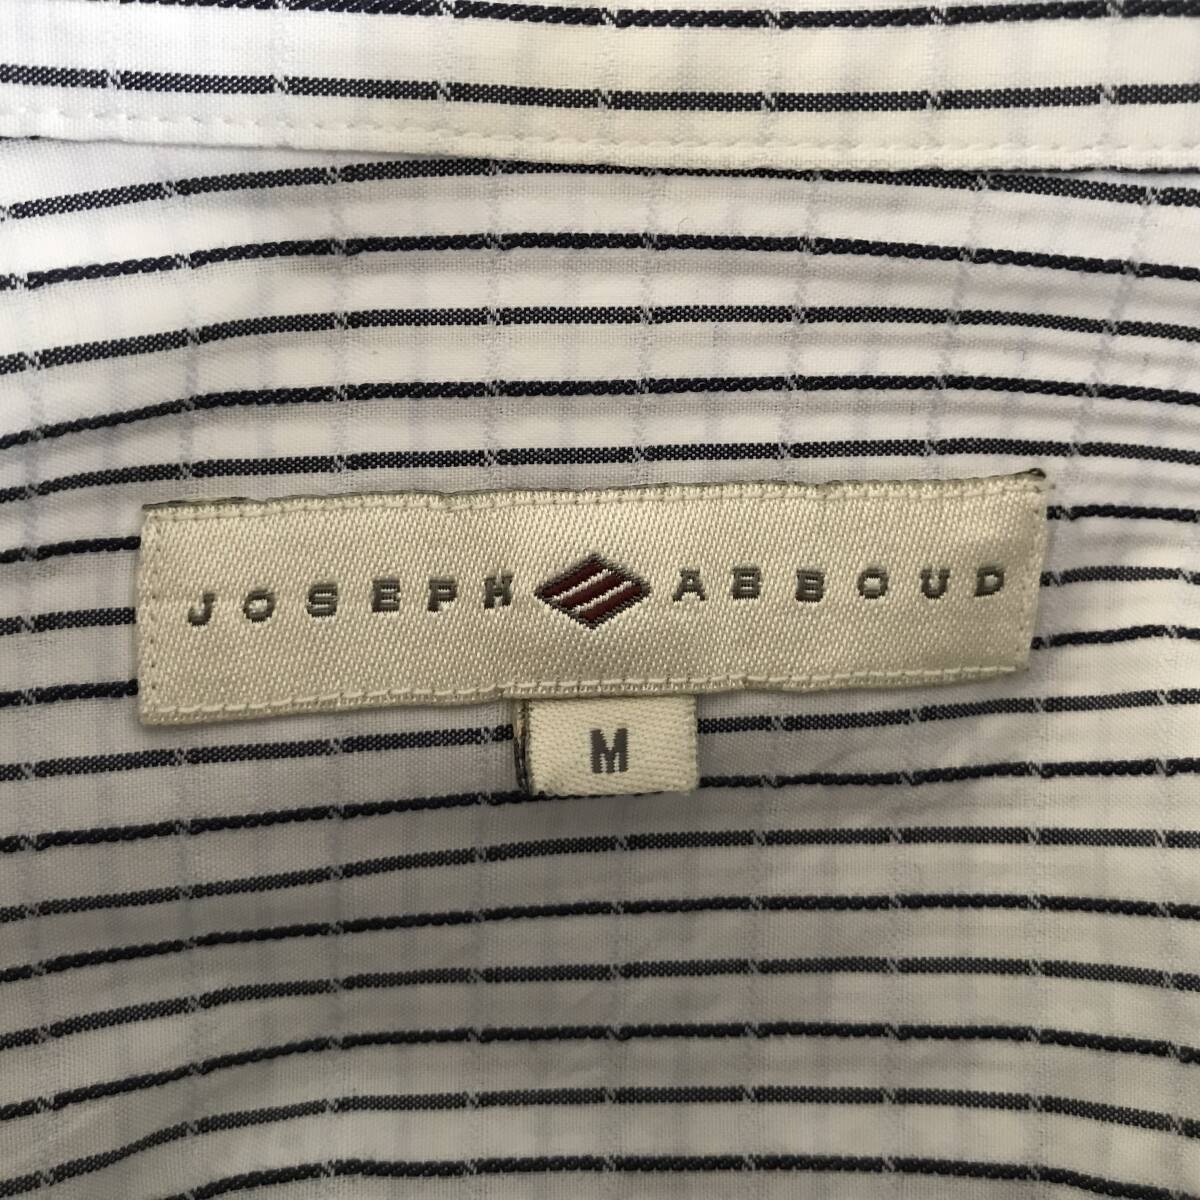 JOSEPH ABBOUD ジョセフ アブード メンズ 長袖ボタンダウンシャツ オンワード樫山 美品(ほぼ未着用) size Mの画像4